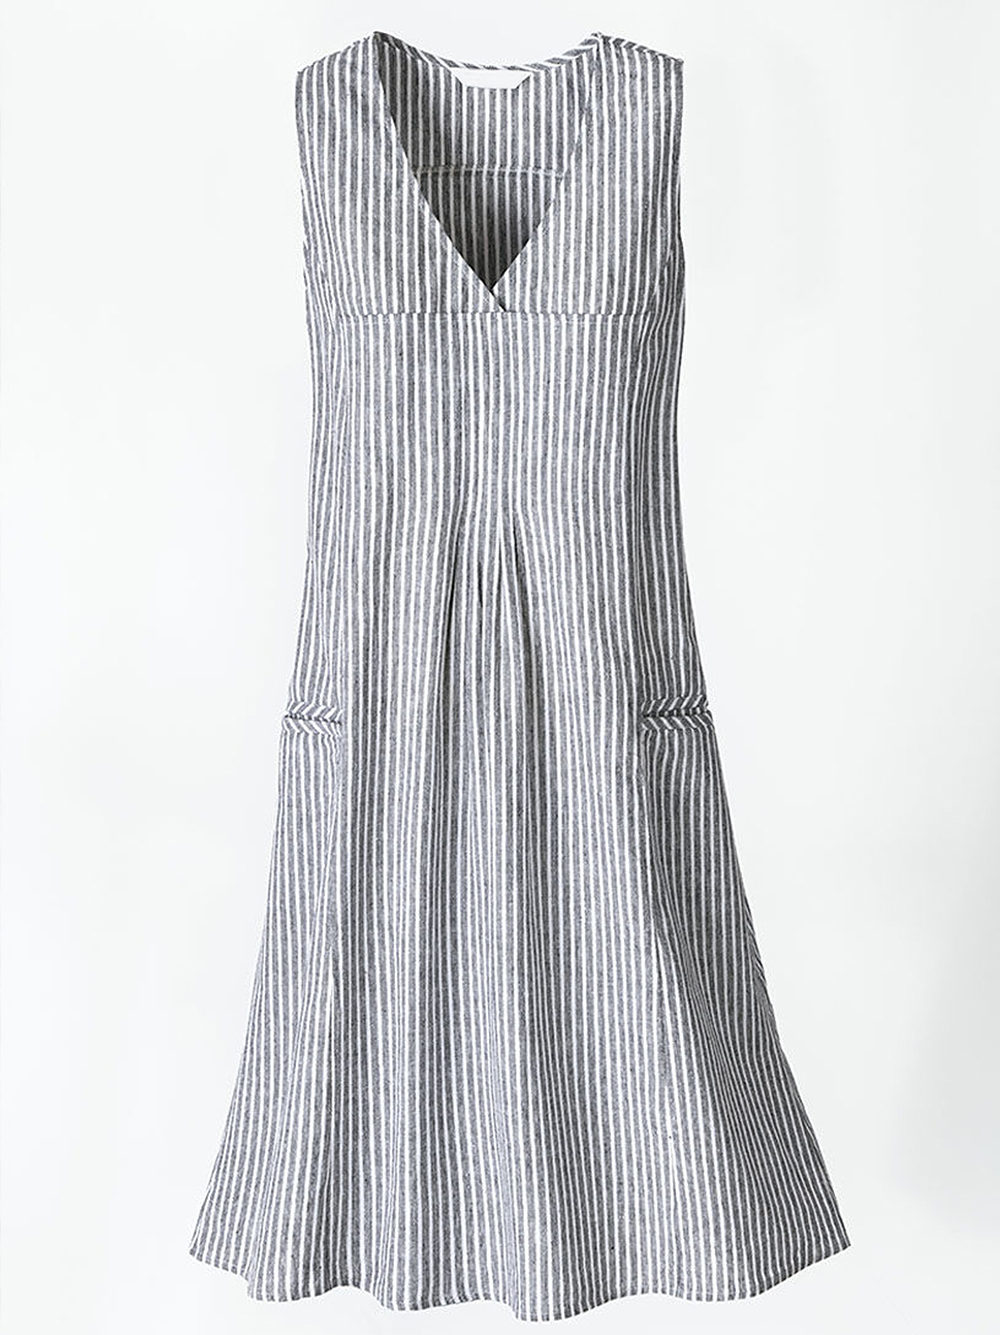 COZINEN Women's V-Neck Sleeveless Stripe Dress